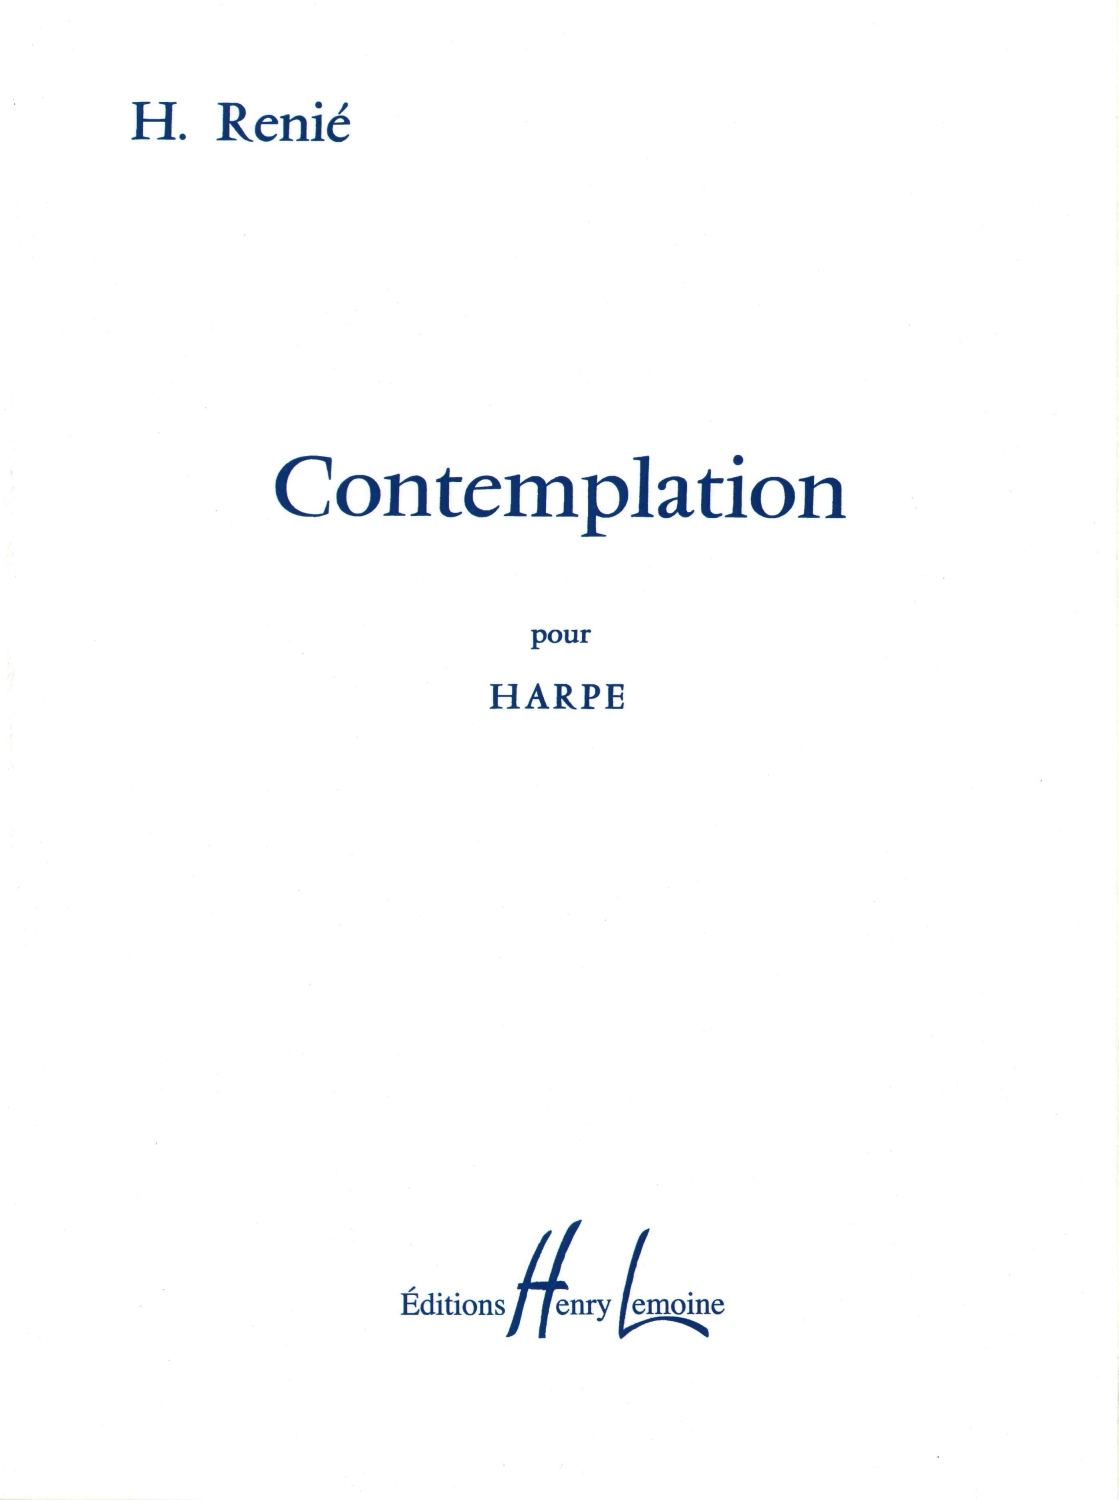 henriette-renie-contemplation-hp-_0001.JPG